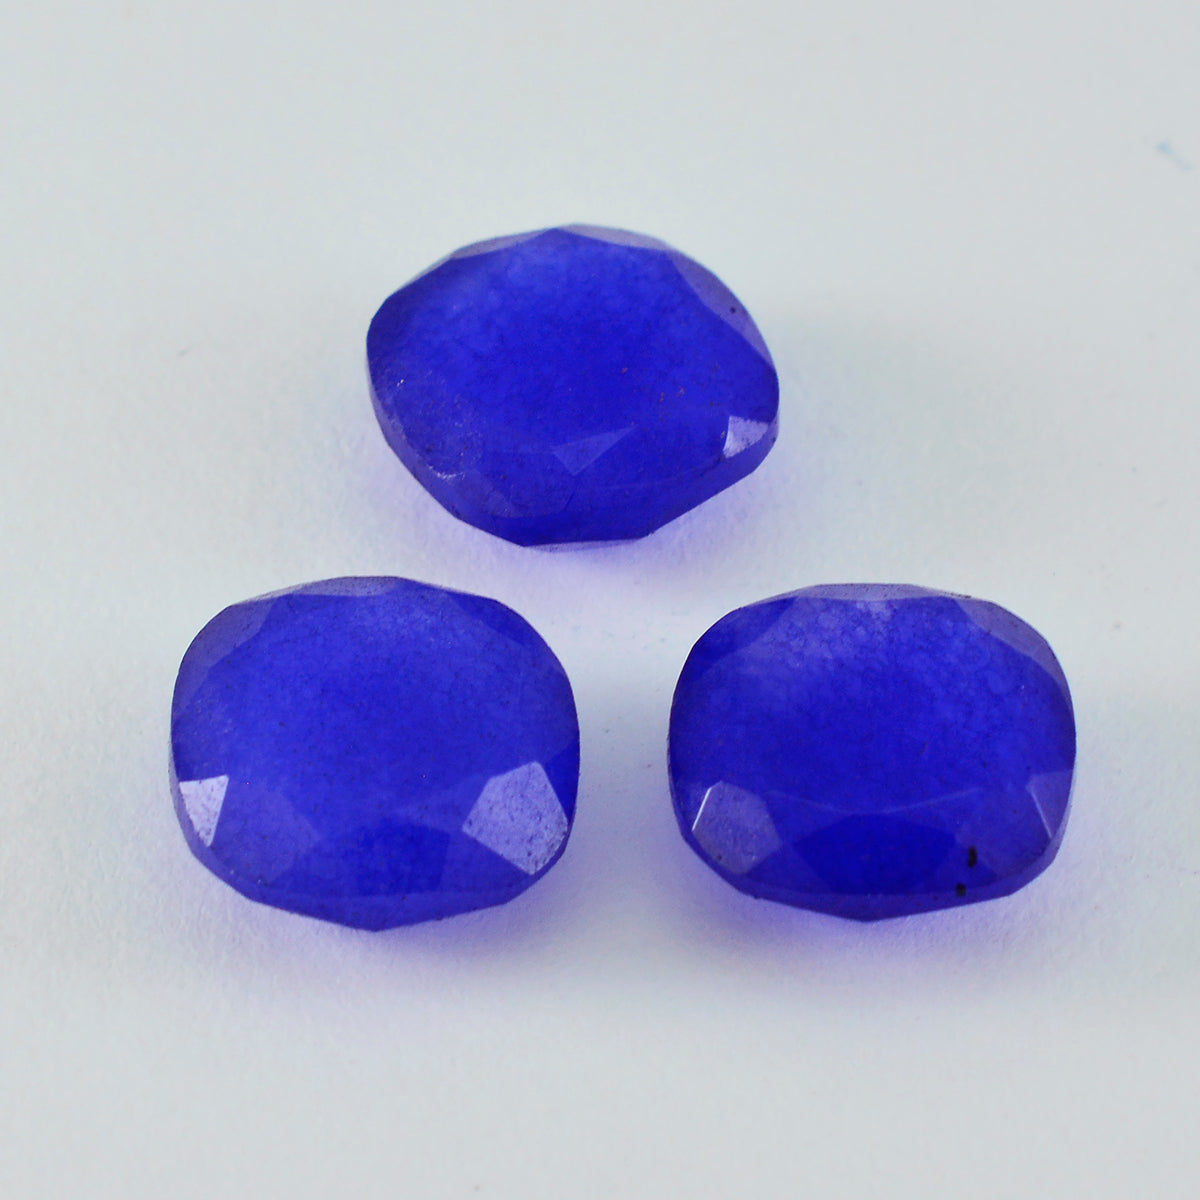 riyogems 1pc リアル ブルー ジャスパー ファセット 11x11 mm クッション形状 a1 品質の宝石